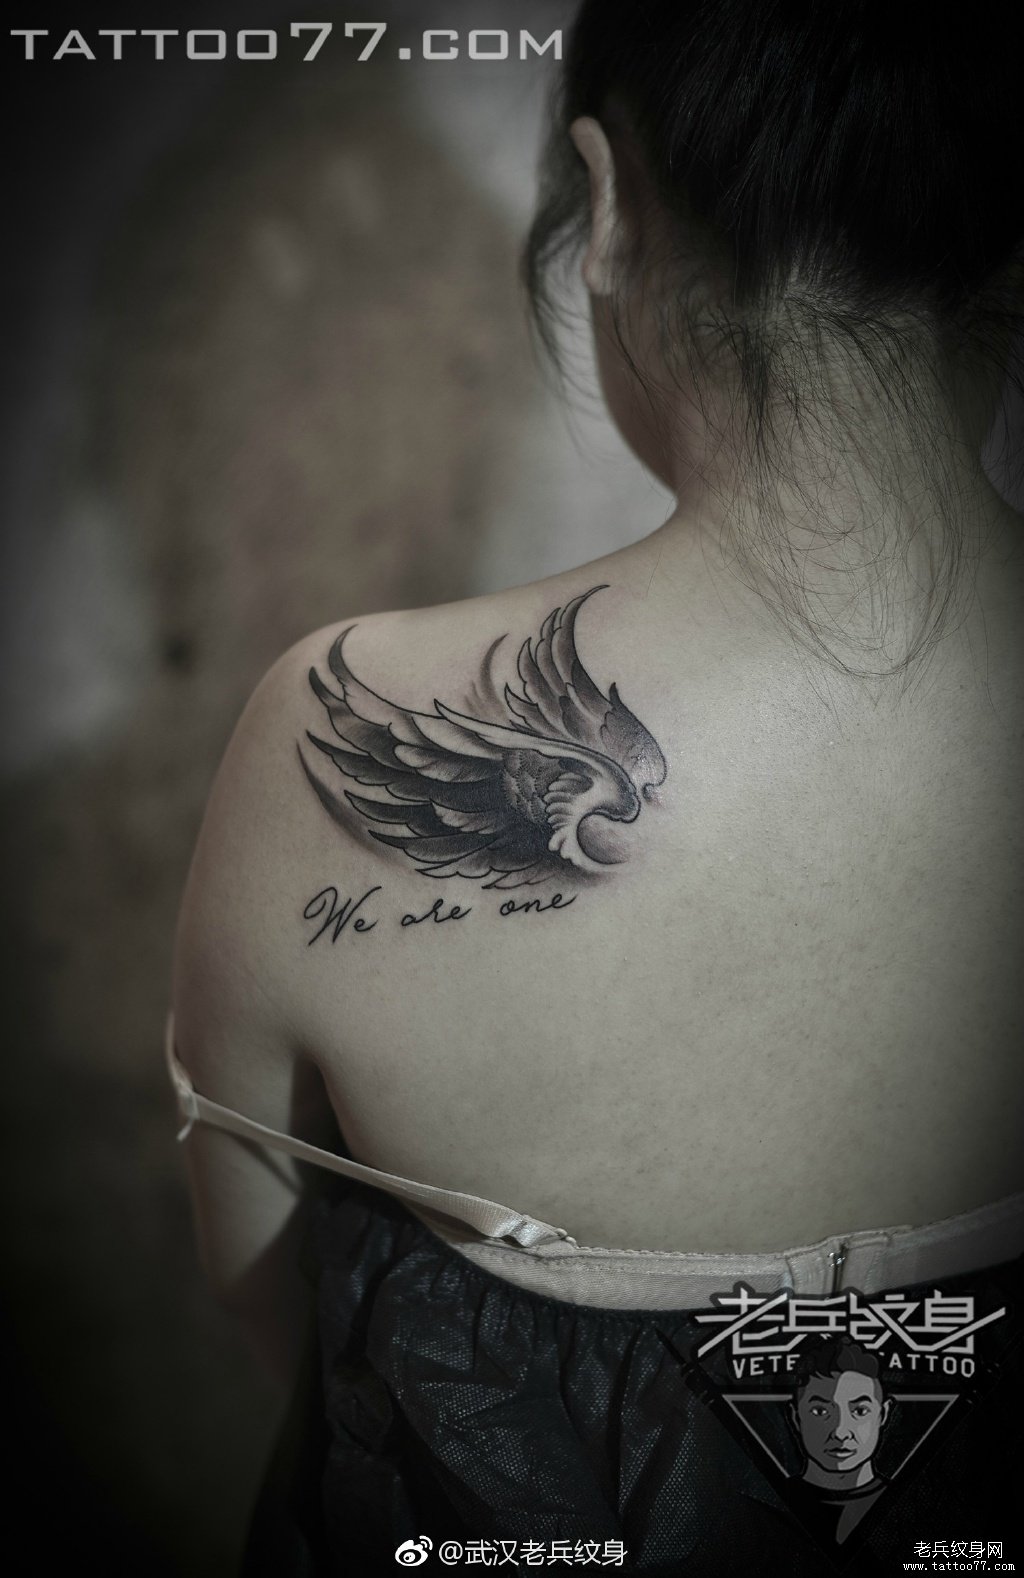 肩胛翅膀纹身图案作品武汉纹身